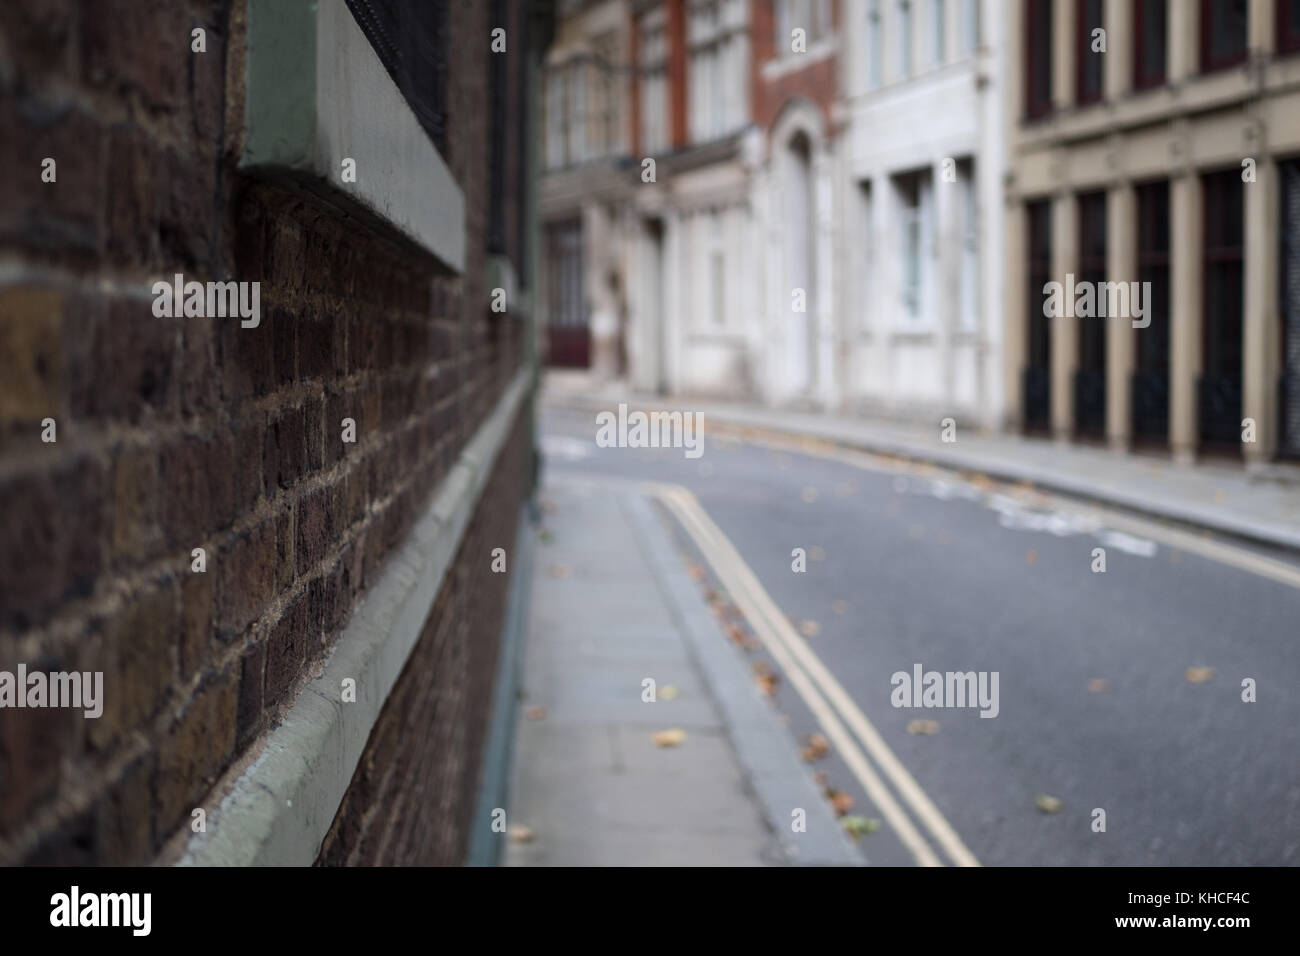 Donnant sur une rue arrière vide à Londres. Appareil photo est poussé contre le mur d'un point de vue subjectif. Banque D'Images